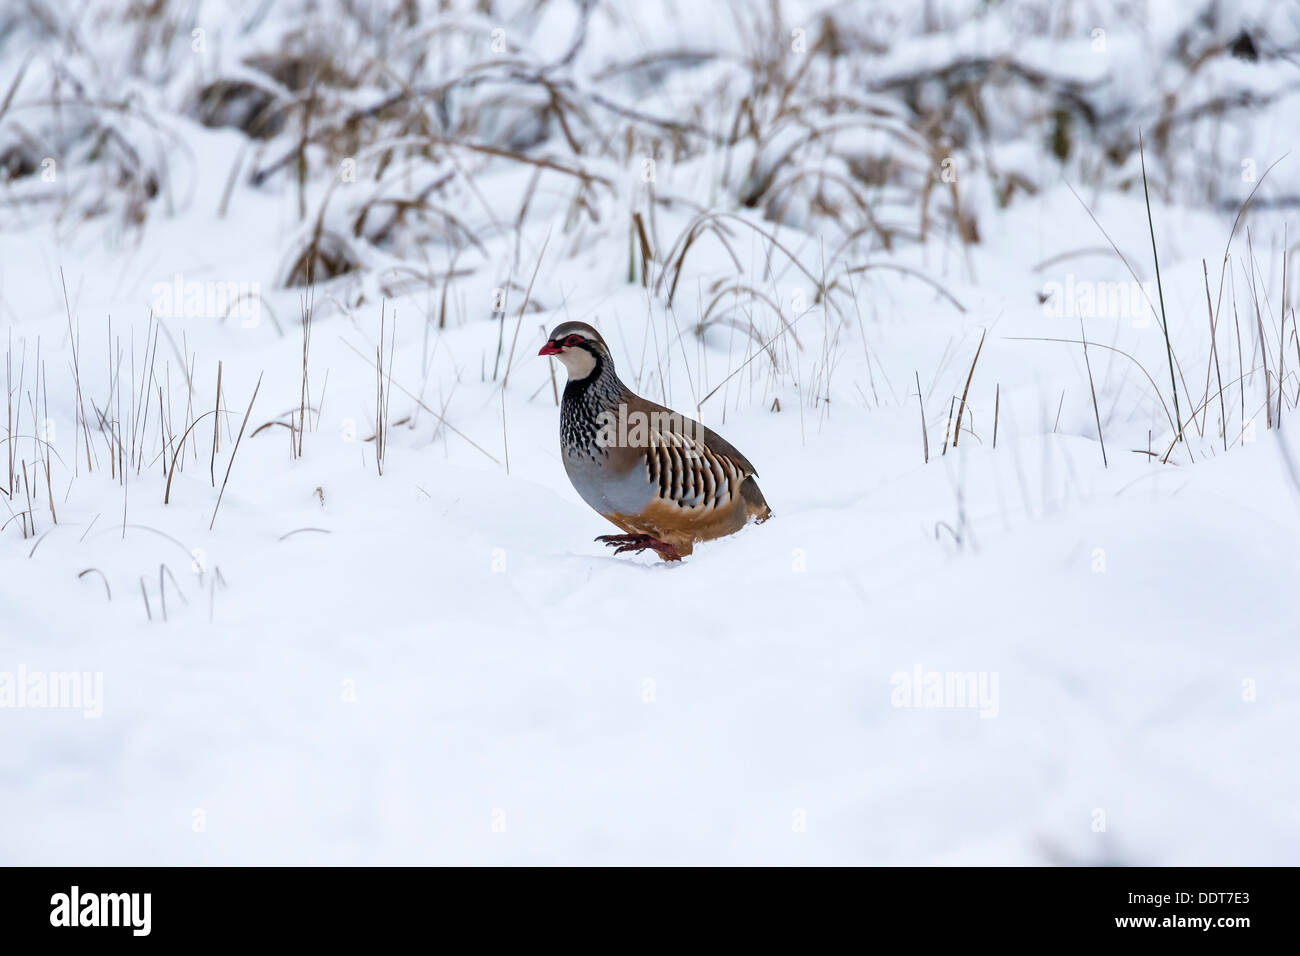 Red-legged partridge dans la neige Banque D'Images